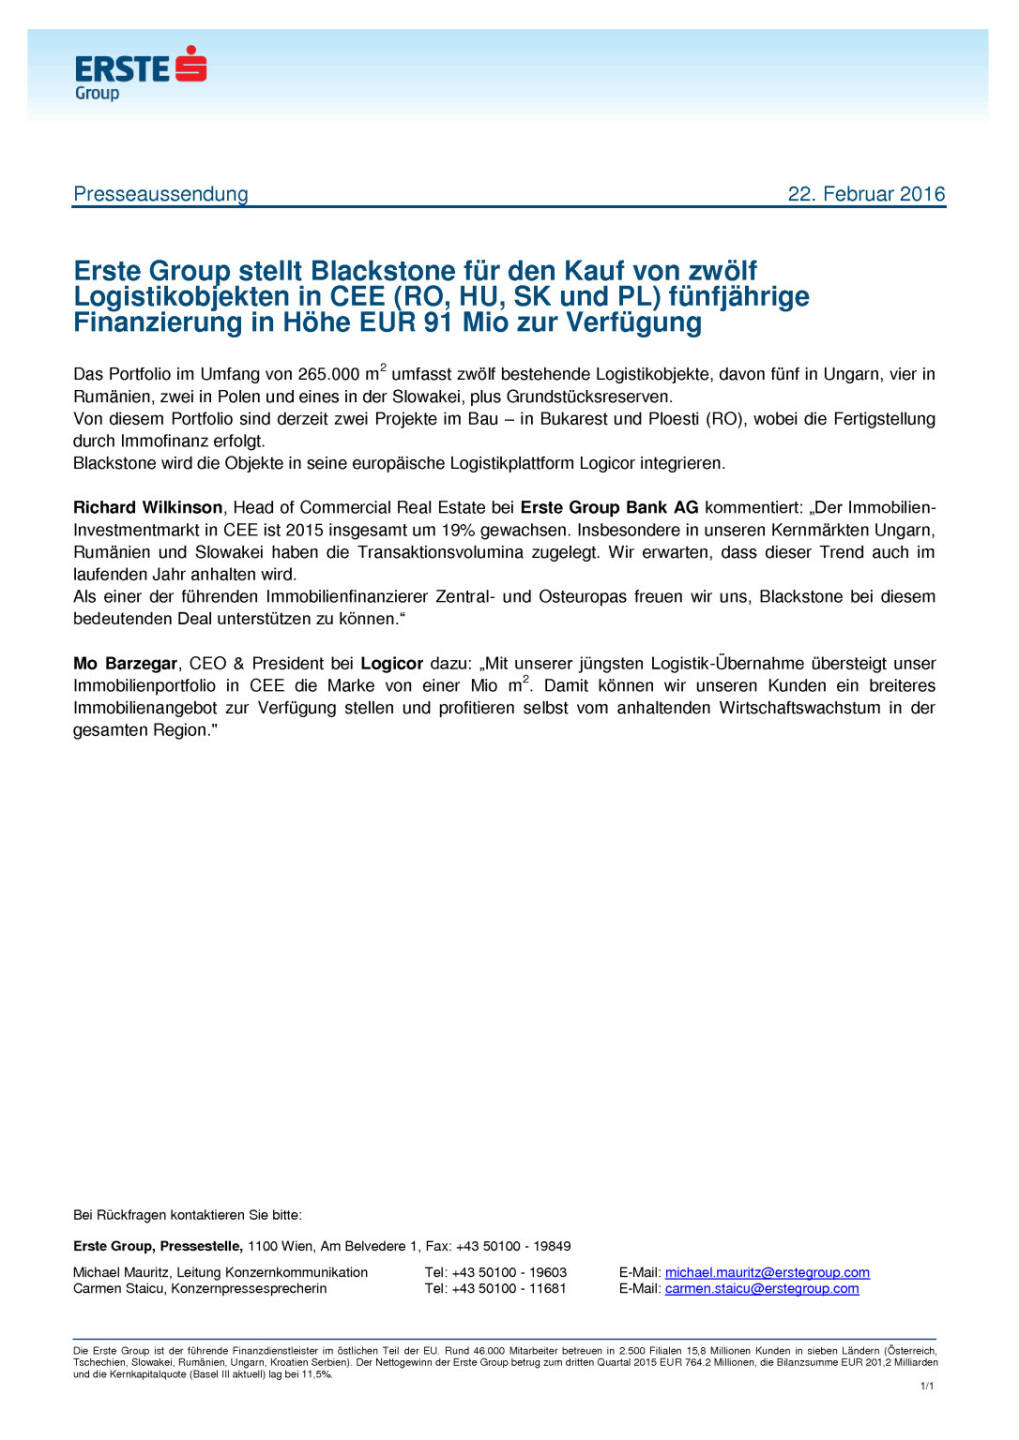 Erste Group stellt Blackstone eine fünfjährige Finanzierung in Höhe EUR 91 Mio zur Verfügung, Seite 1/1, komplettes Dokument unter http://boerse-social.com/static/uploads/file_668_erste_group_stellt_blackstone_eine_funfjahrige_finanzierung_in_hohe_eur_91_mio_zur_verfugung.pdf